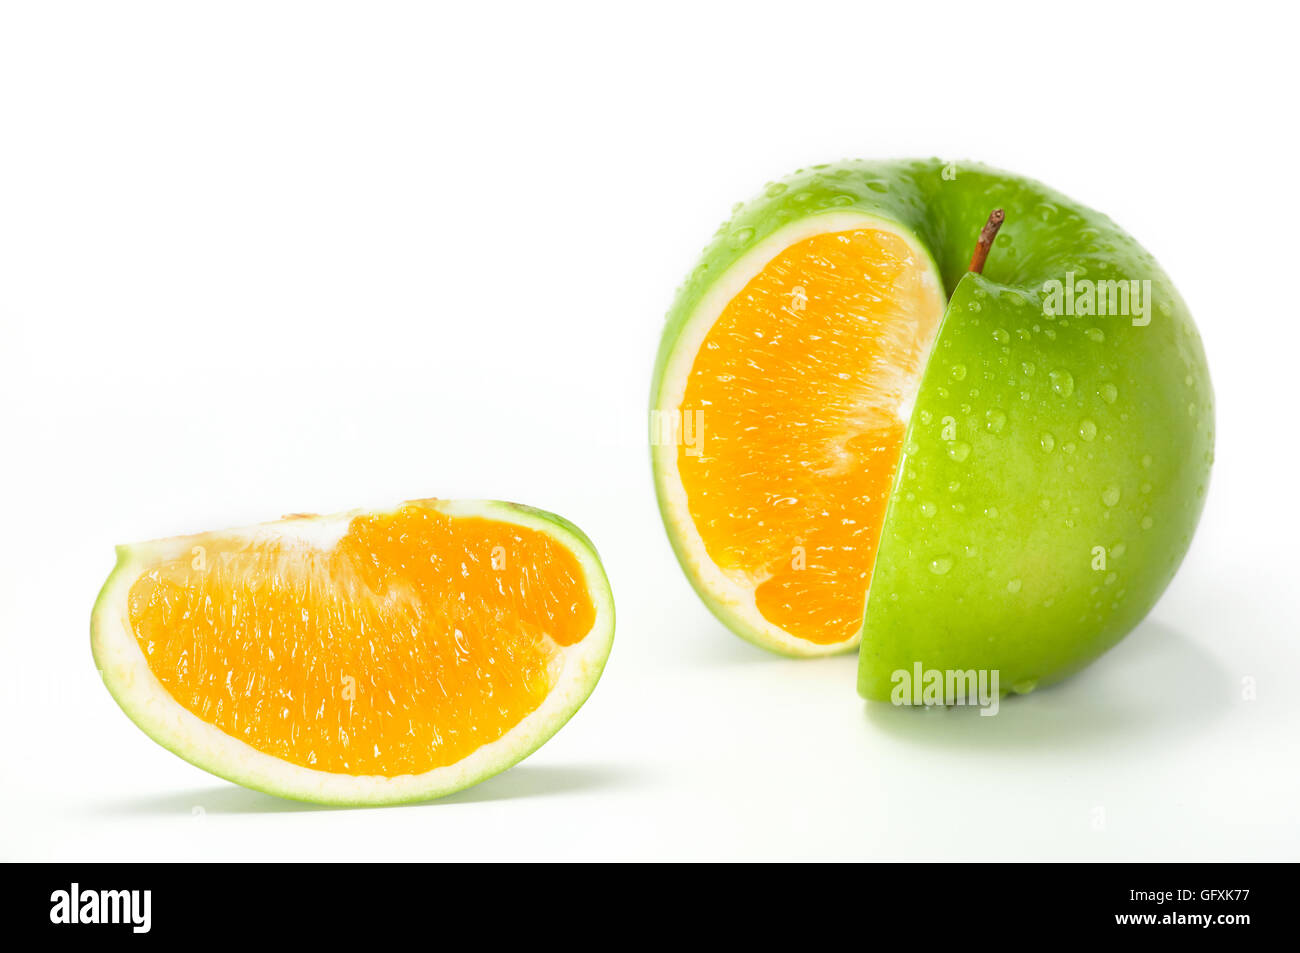 Apple Orange Hybrid. Nahaufnahme Bild des frischen grünen Apfel mit Orange kombiniert. Stockfoto